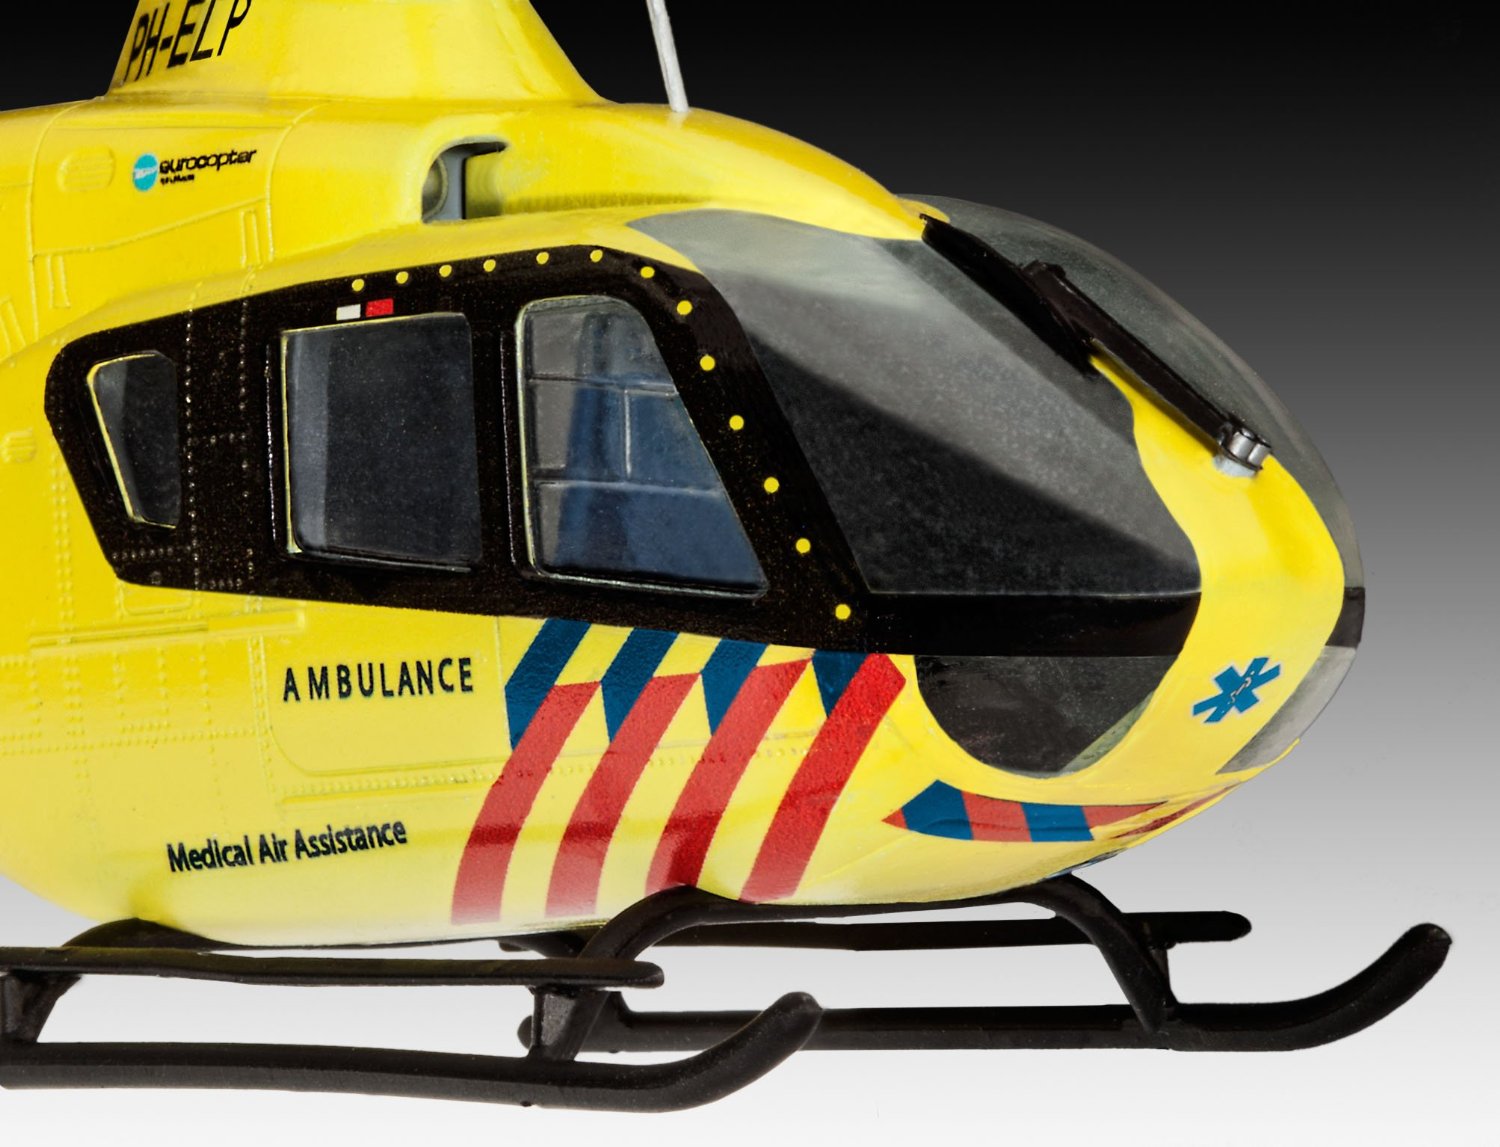 Сборная модель - Вертолет EC135 Nederlandse Trauma  